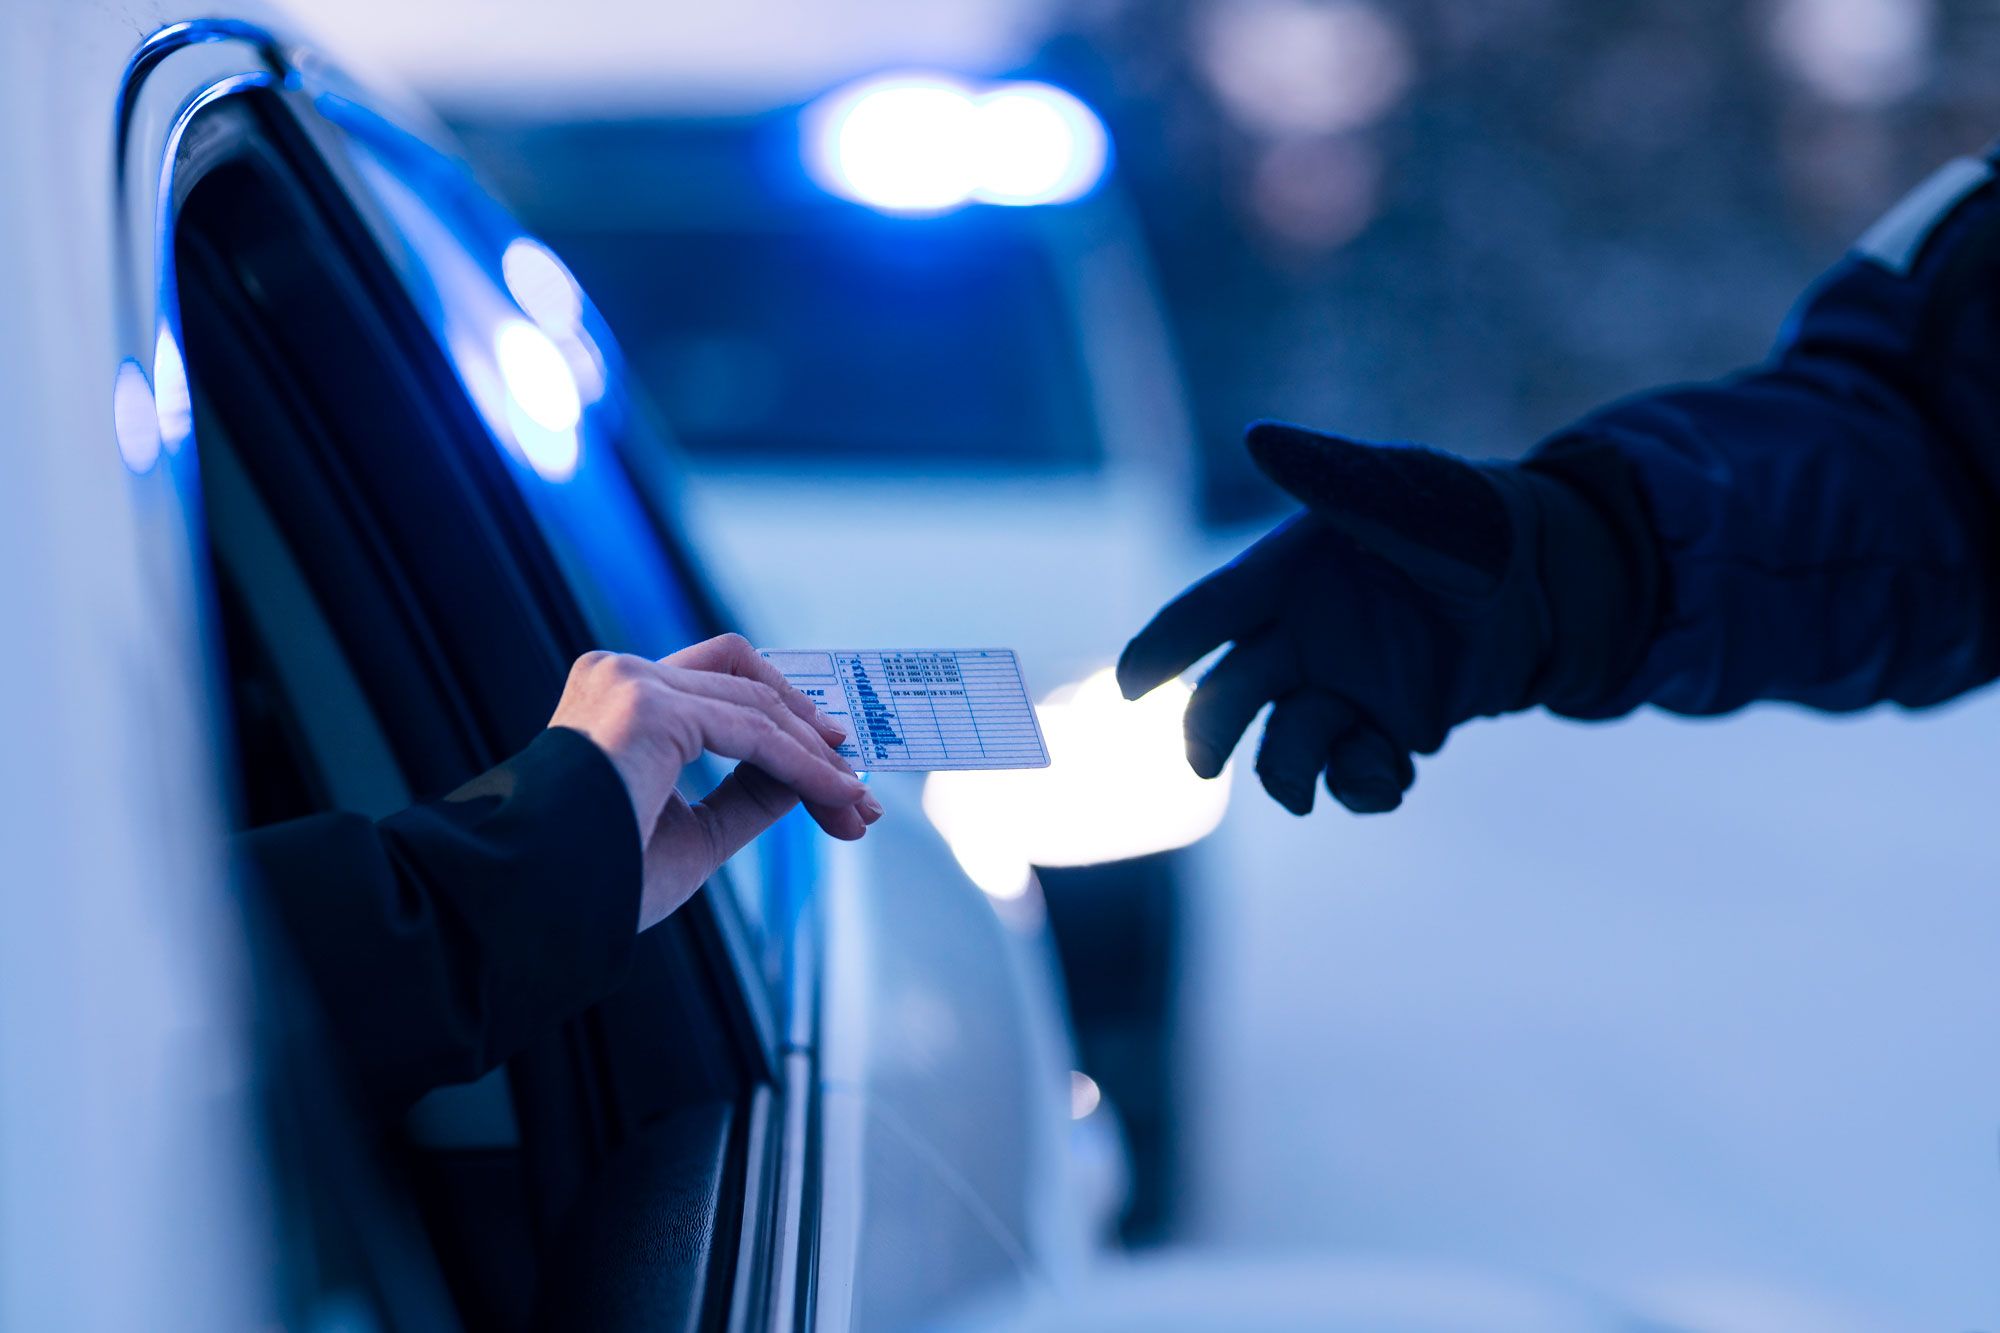 Asiakas ojentaa poliisille ajokortin henkilöauton ikkunasta. Ajokortti asiakkaan kädessä ja poliisin käsi ojentuneena ottamaan sitä. 